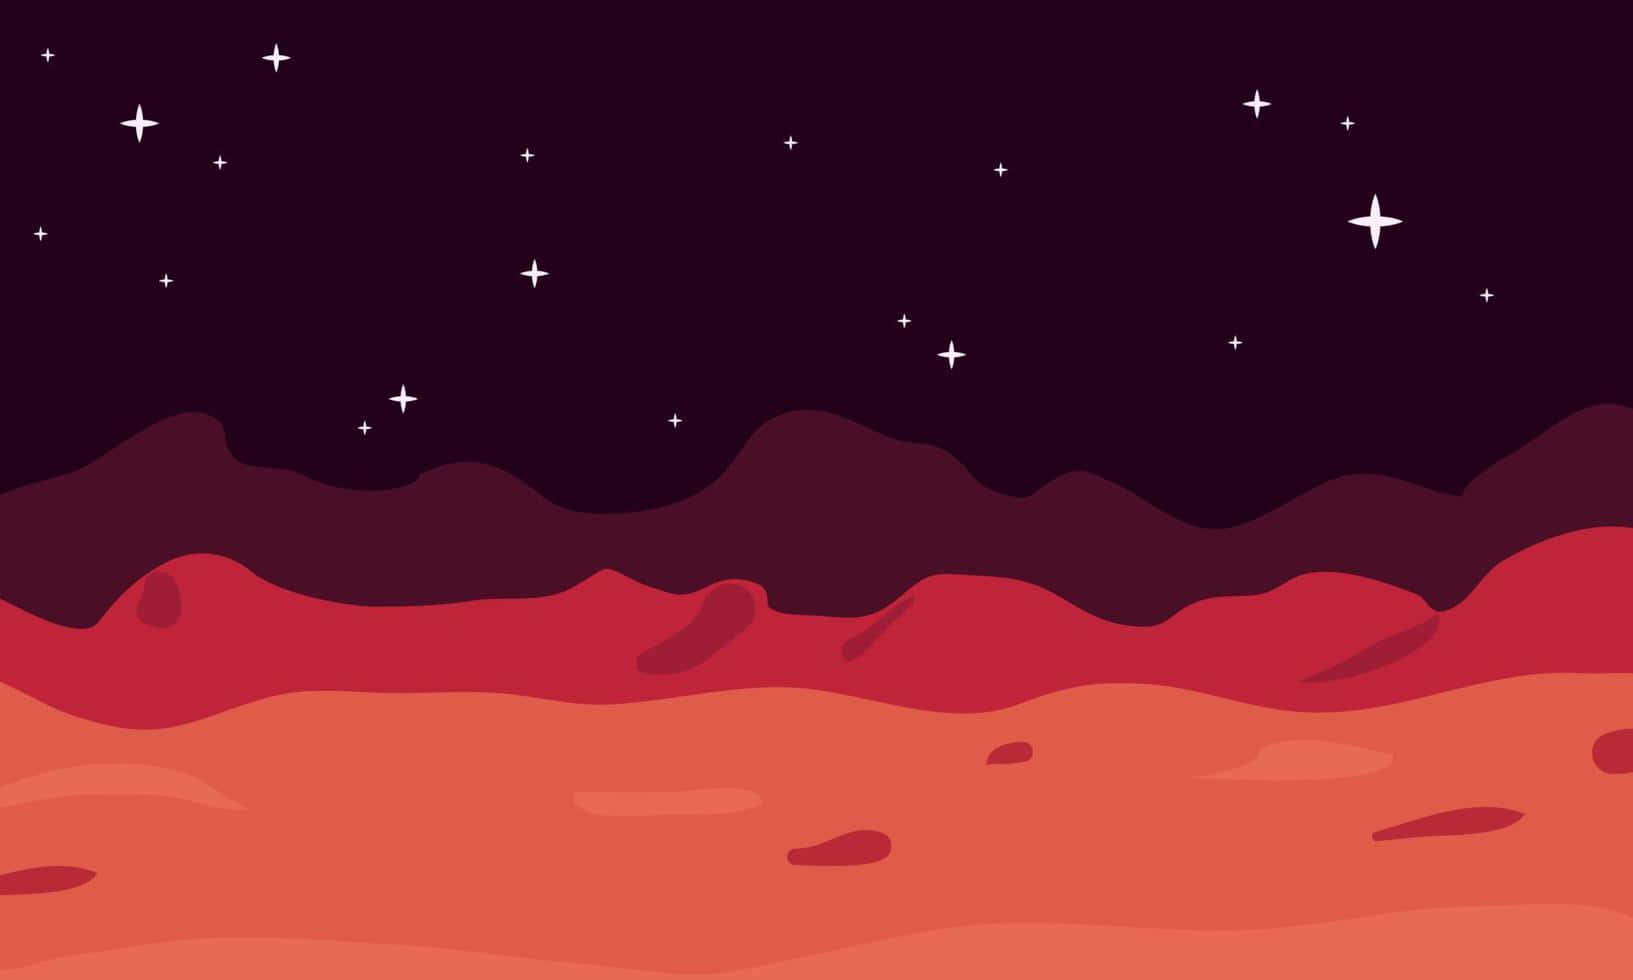 Explore the reddish terrain of Mars